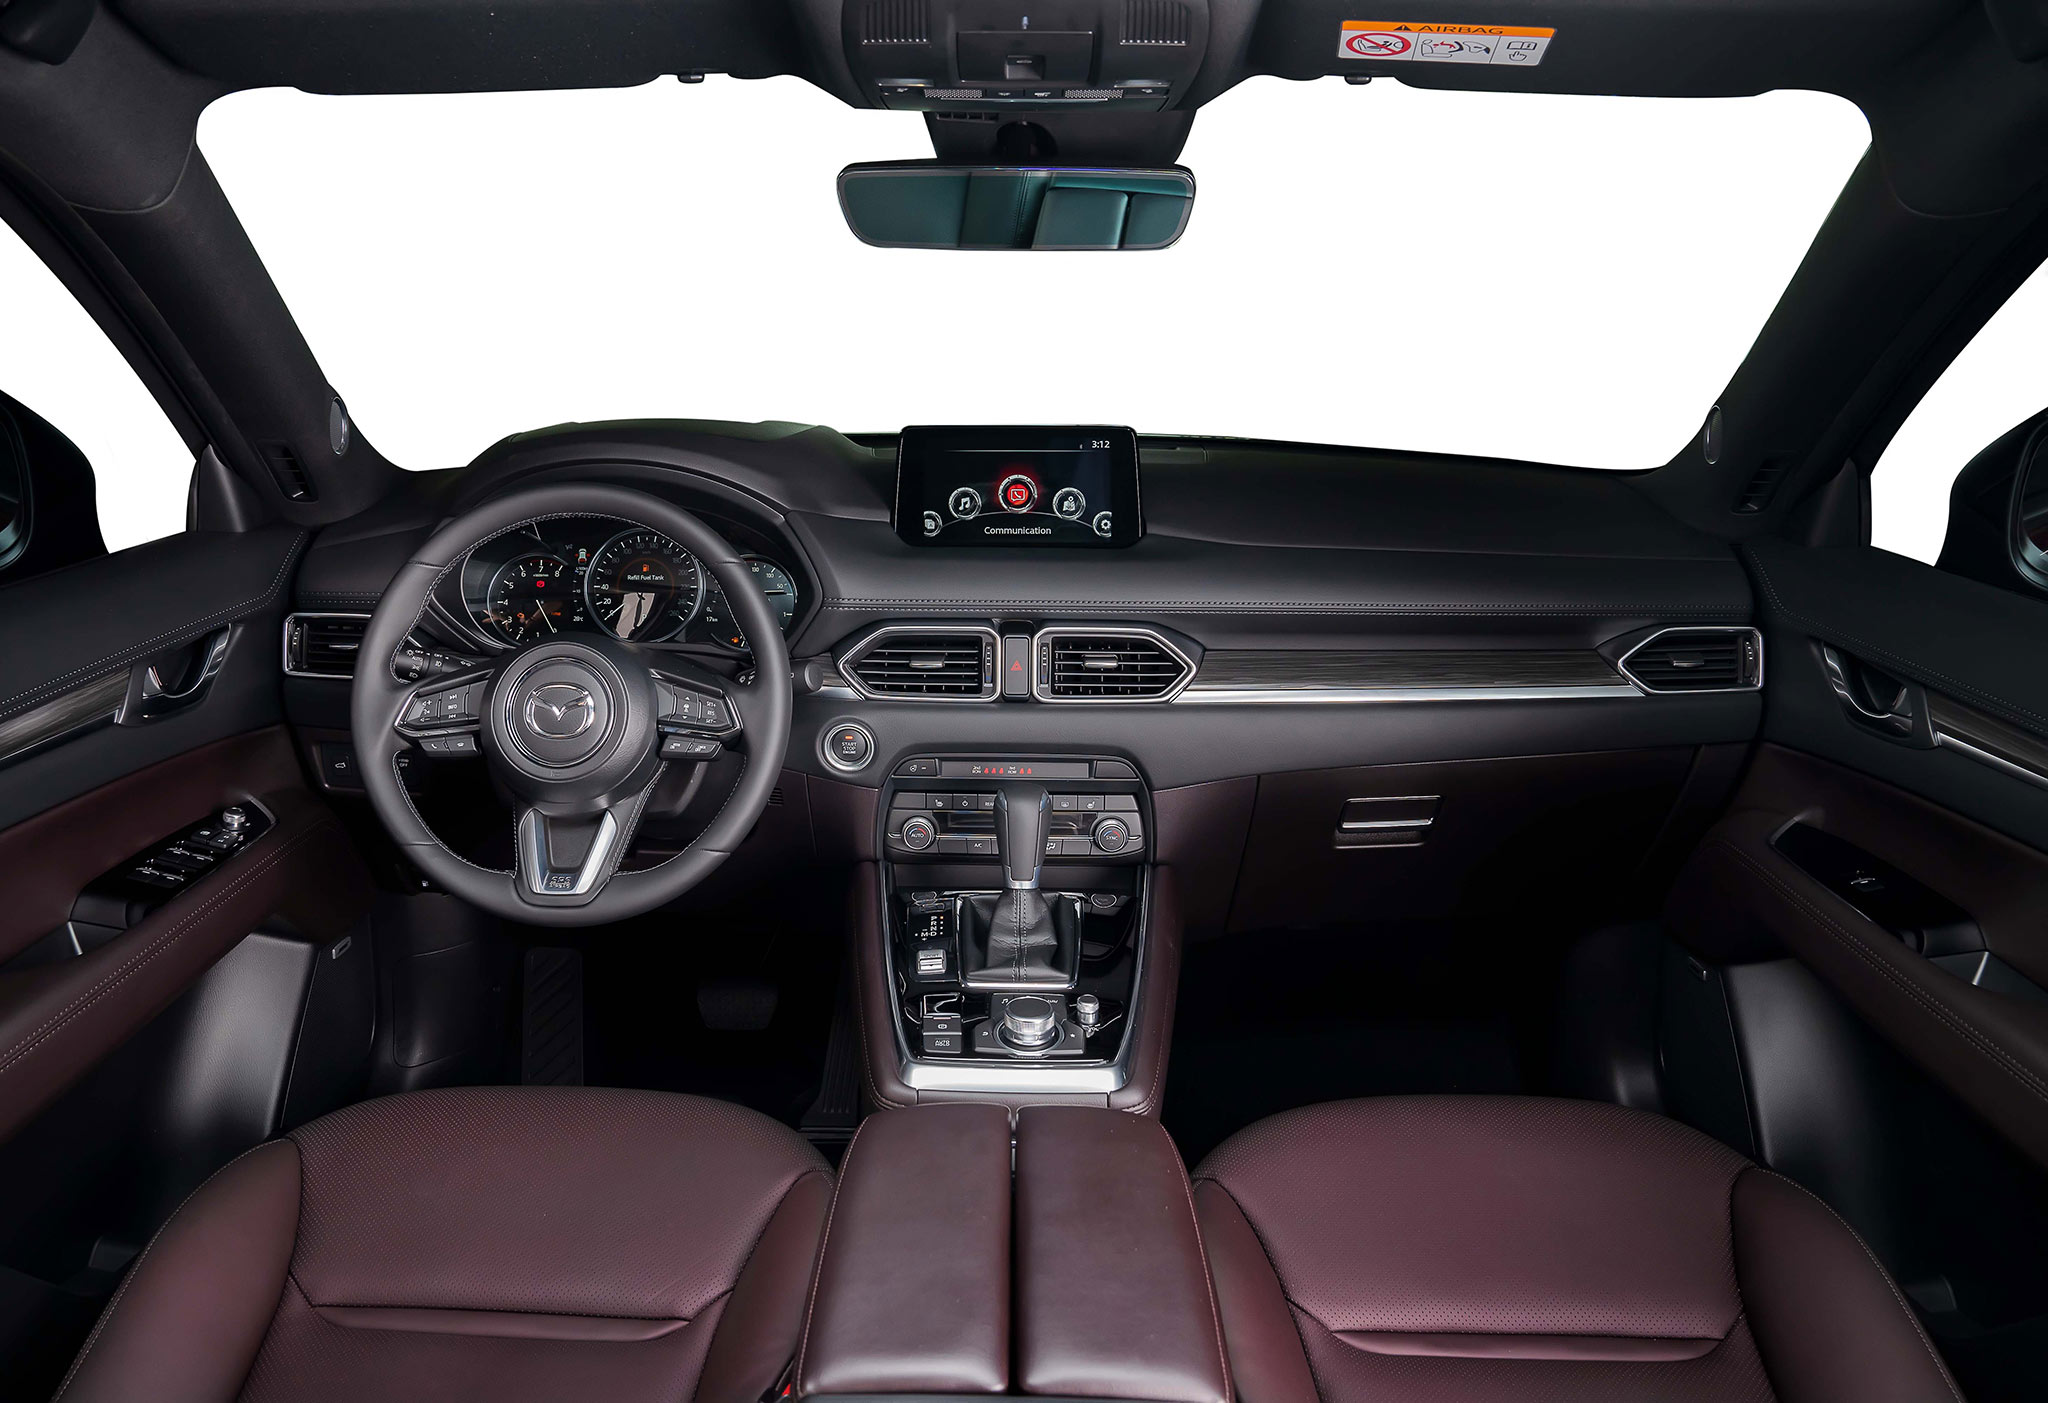 Bộ tứ Mazda CX: Chinh phục khách hàng yêu thích thiết kế và công nghệ khoang-lai.jpg